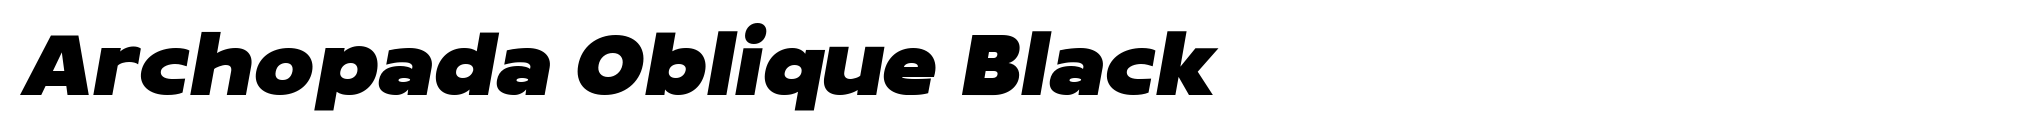 Archopada Oblique Black image